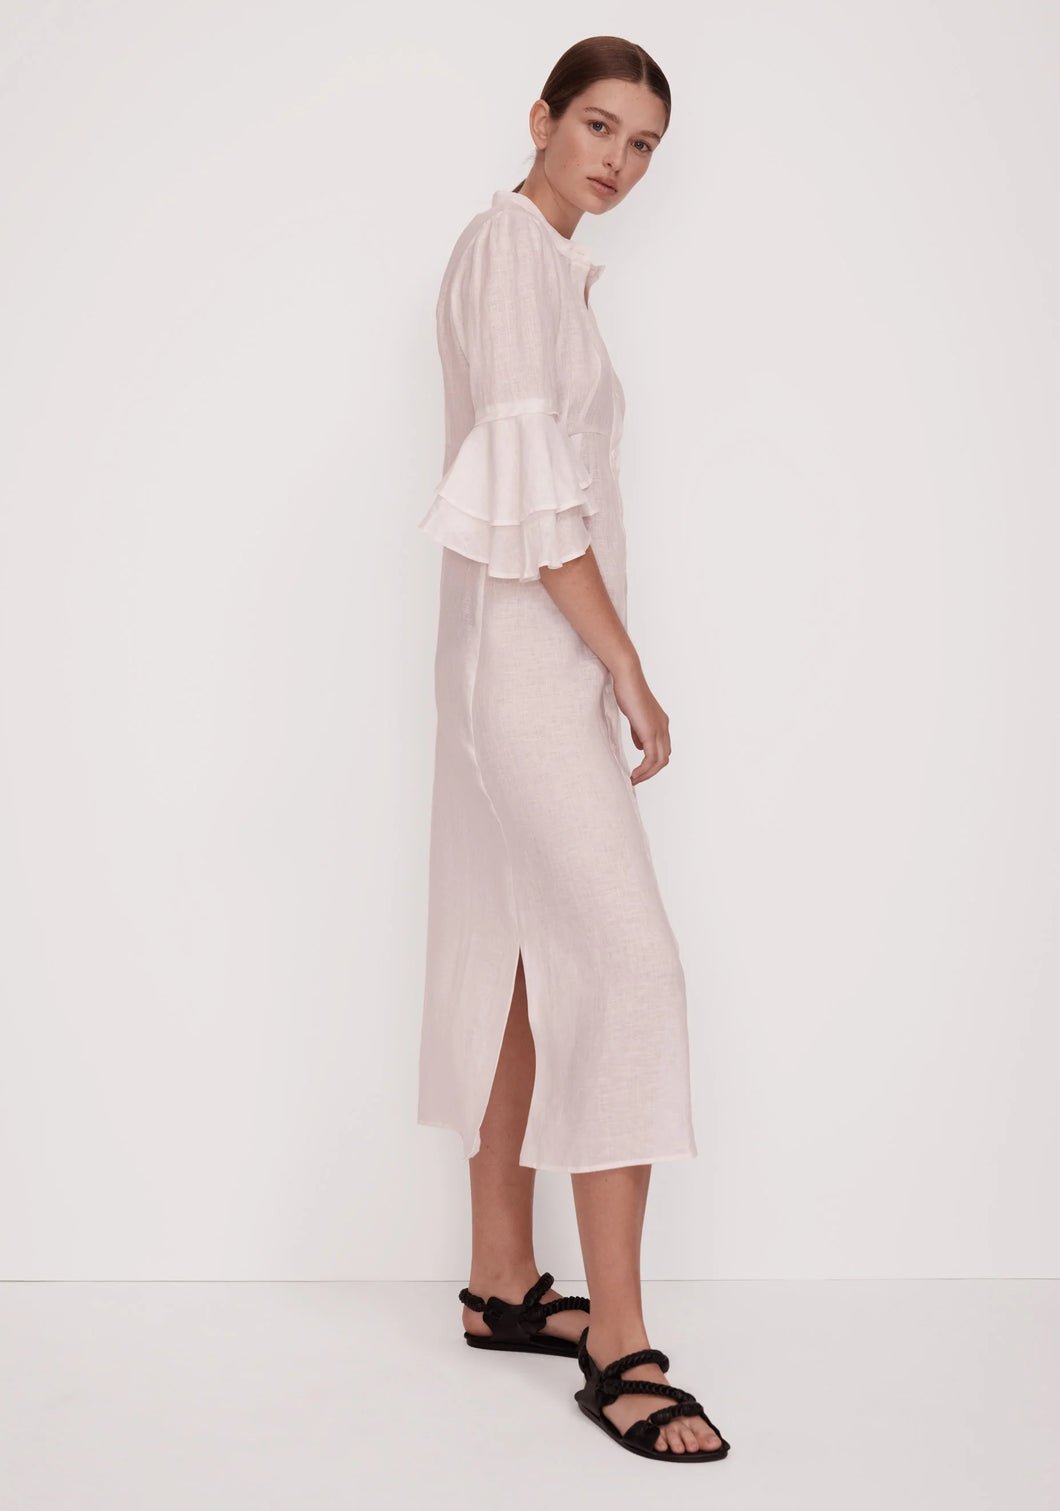 Ellison Linen Dress - White